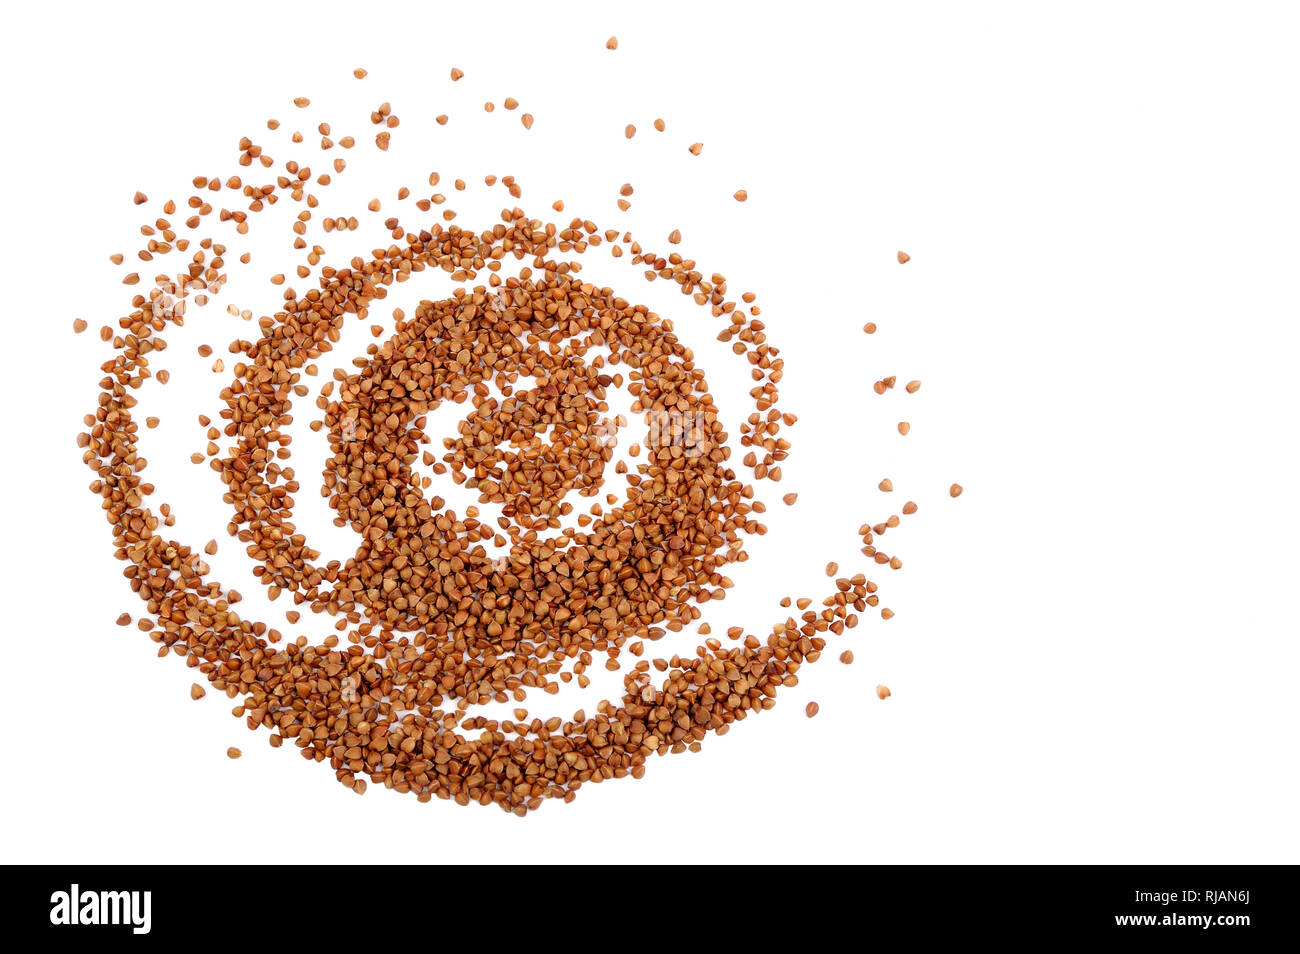 Wallpaper composizione astratta di organico grano saraceno .grano non contiene glutine, essa può essere mangiato da persone con glutine-disturbi correlati. Utile naturale Foto Stock